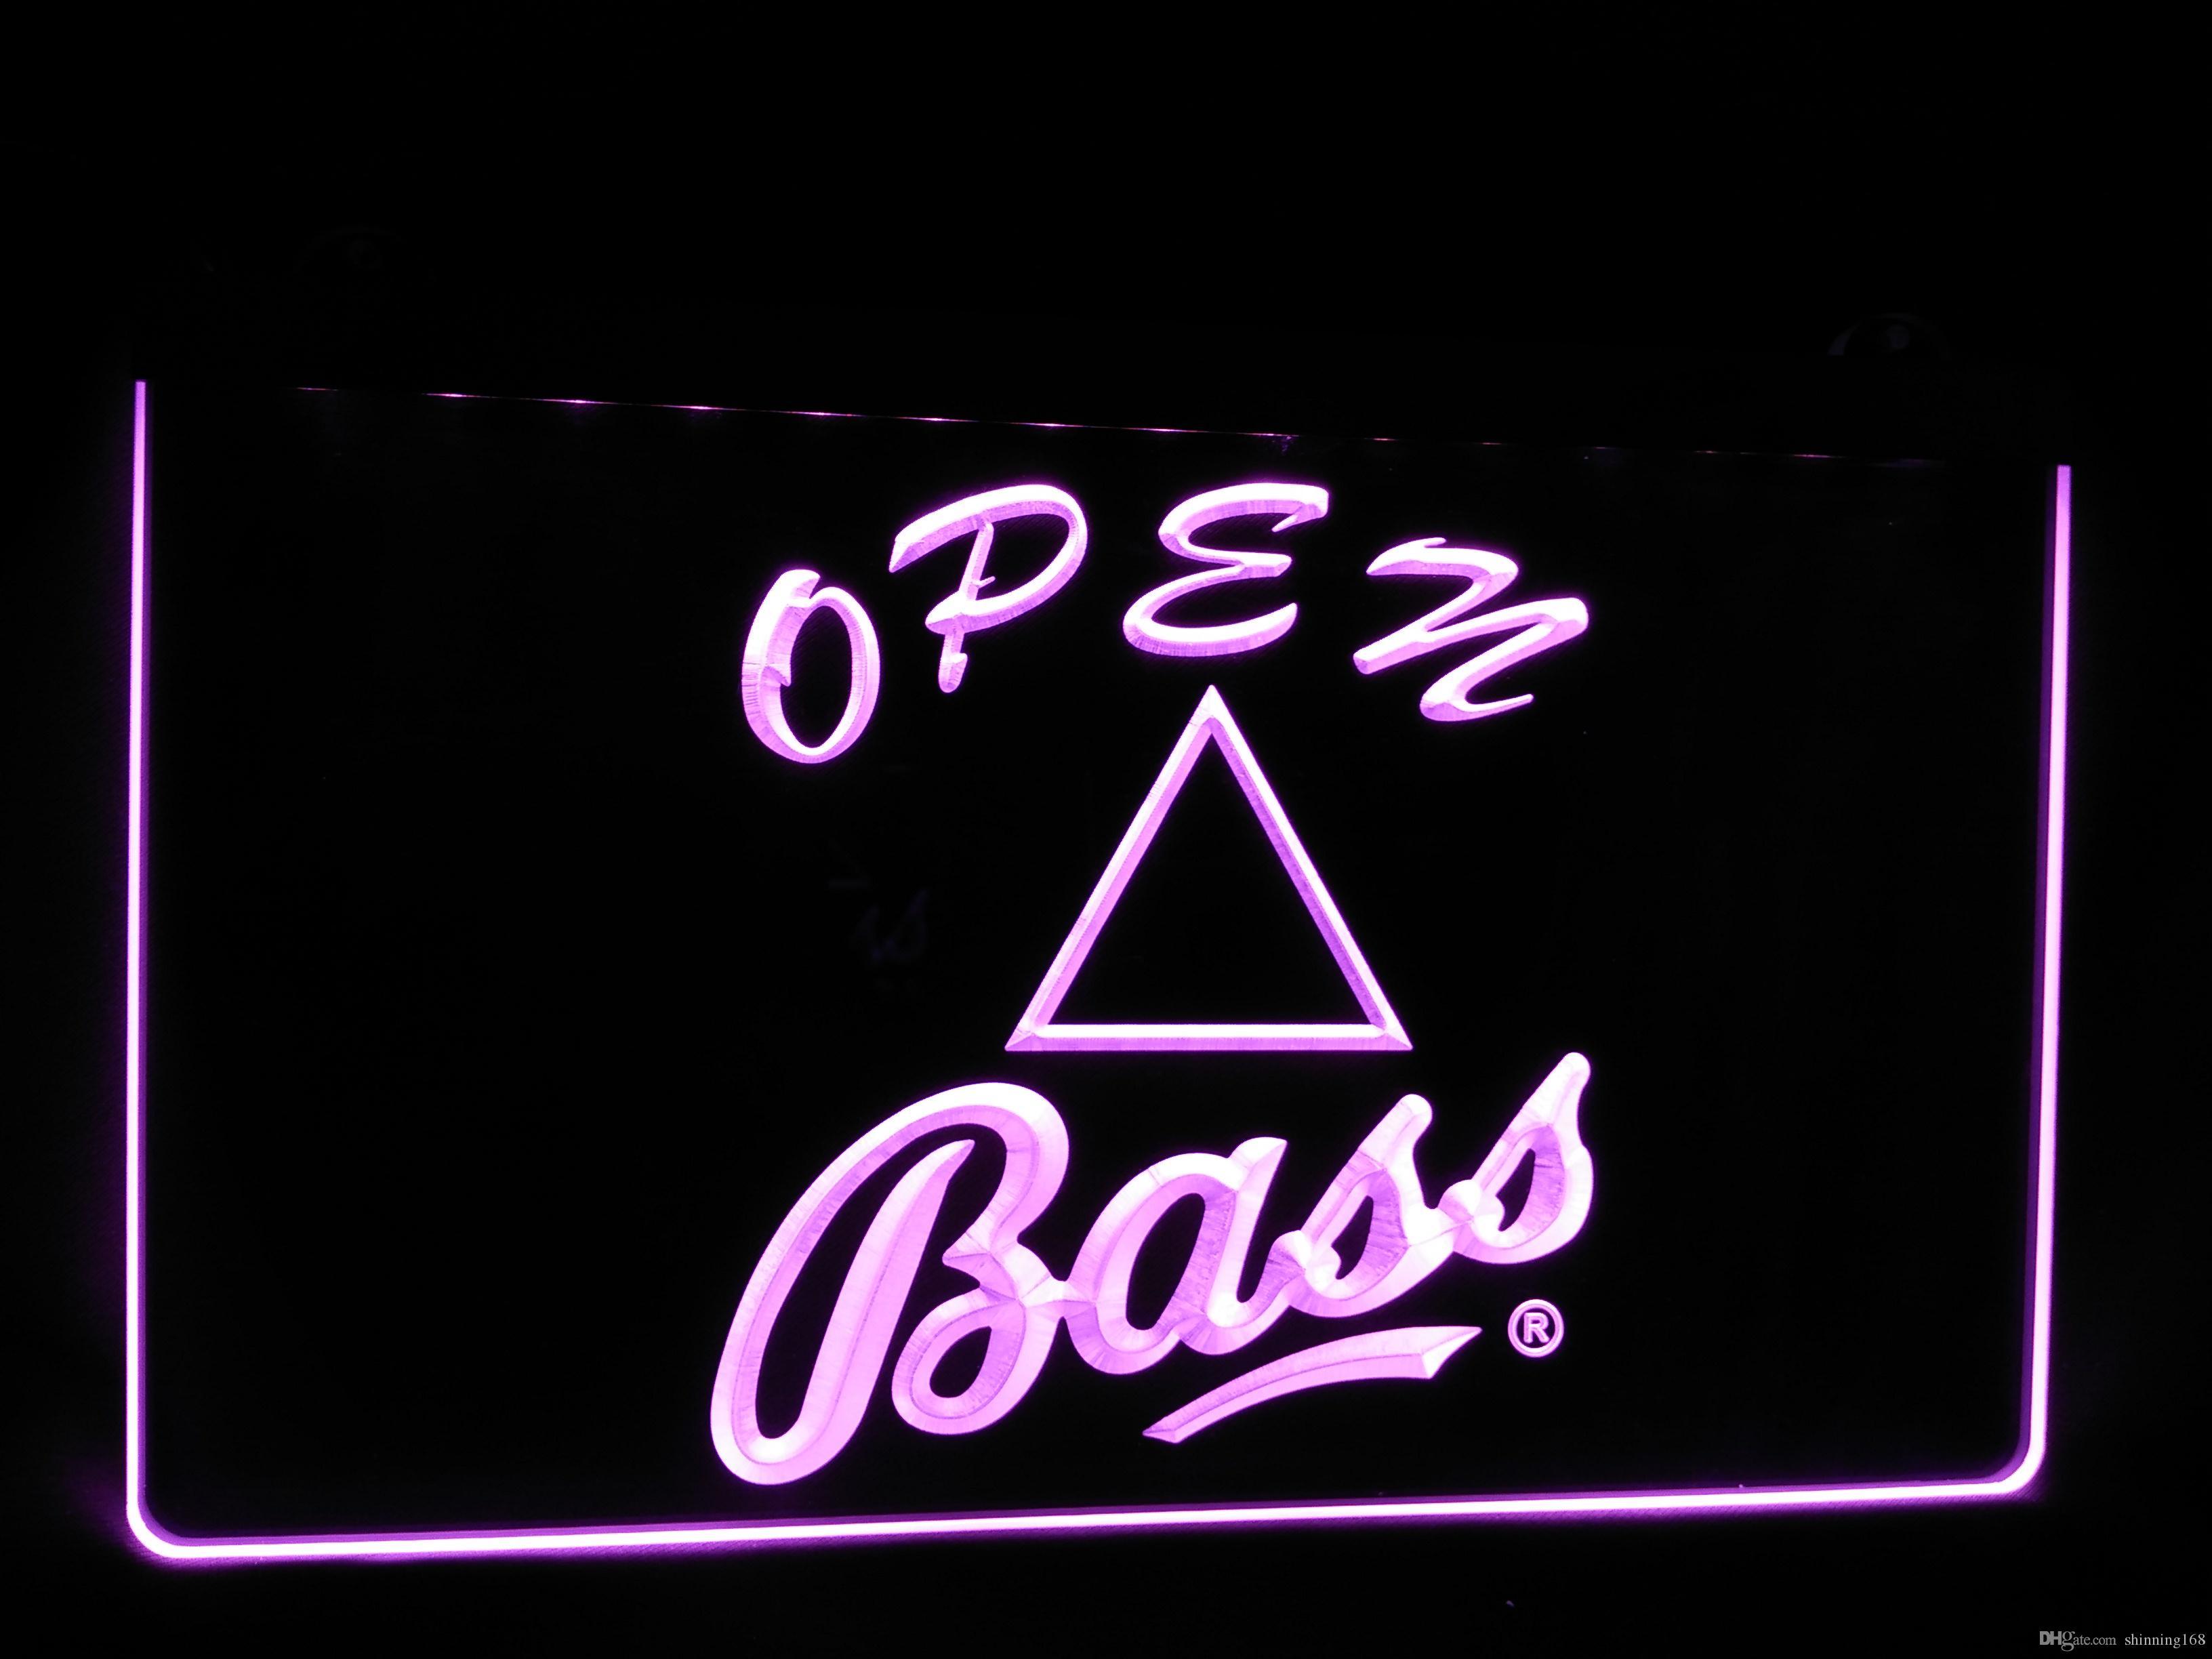 Bass Beer Logo - Best Ls437 P Bass Beer Logo Bar Pub Club Neon Light Sign.Jpg Under ...